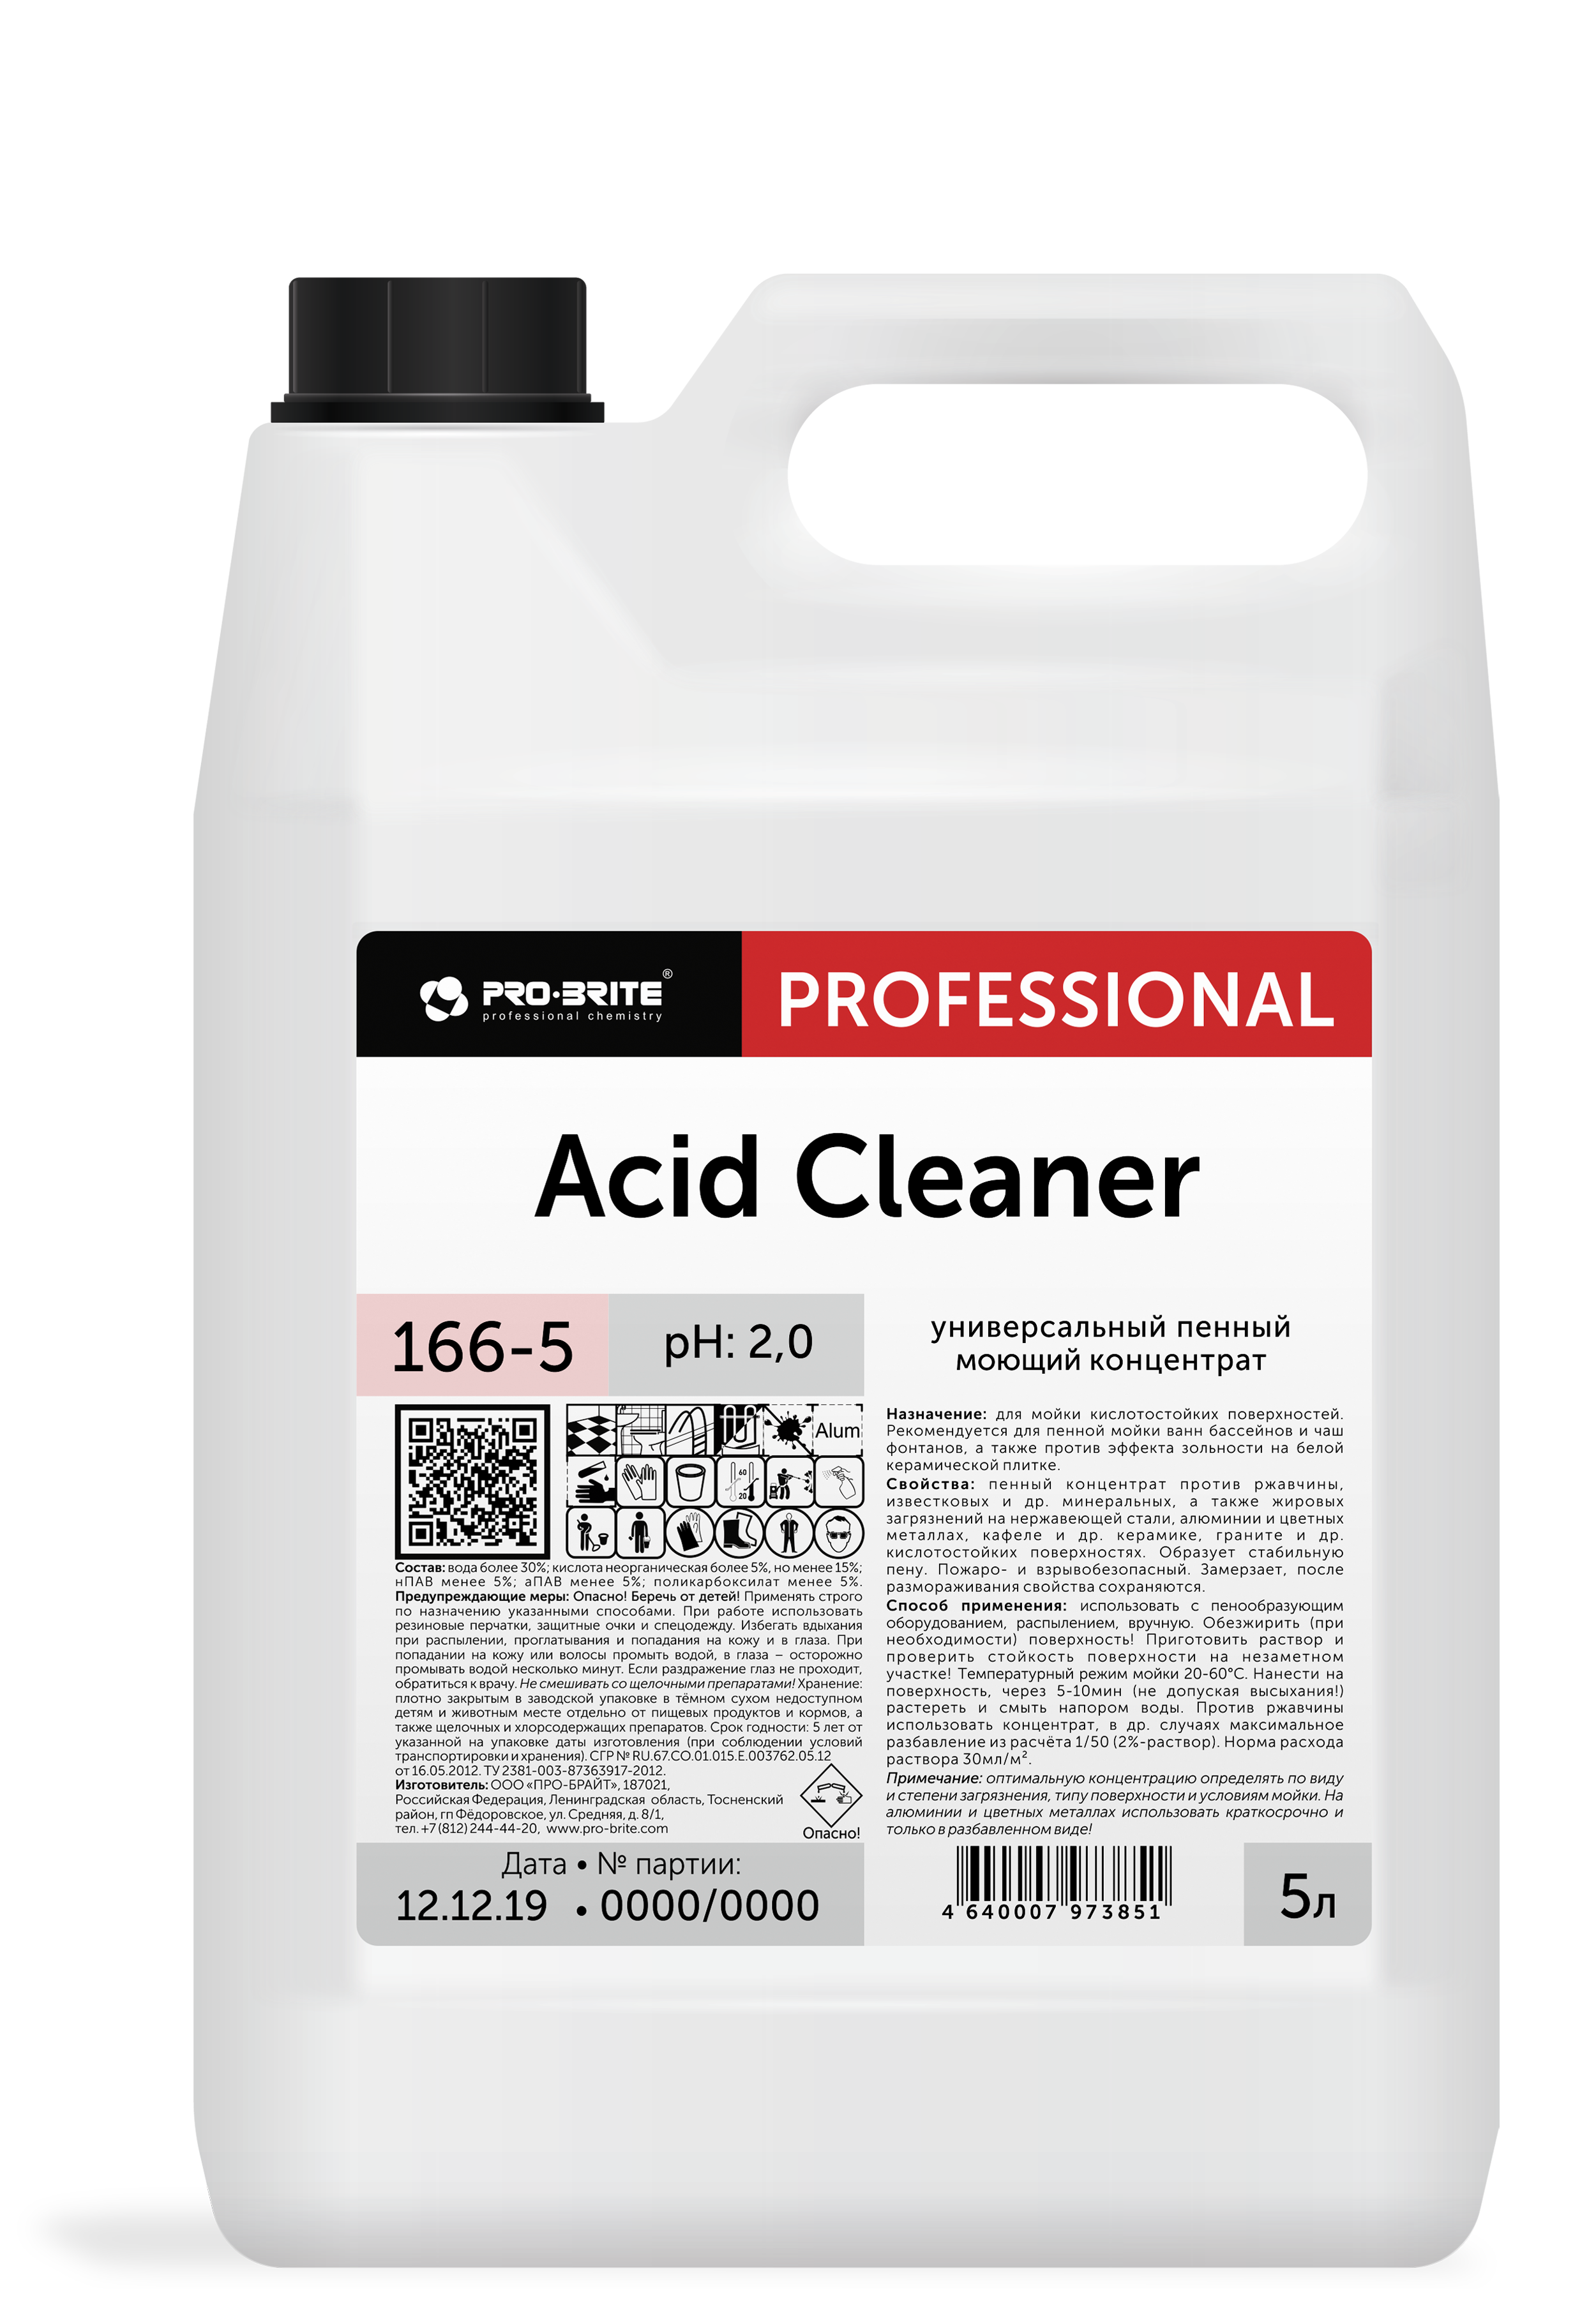 ACID CLEANER для мойки кислотостойких поверхностей. Рекомендуется для пенной мойки ванн бассейнов и чаш фонтанов, а также против эффекта зольности на белой керамической плитке.